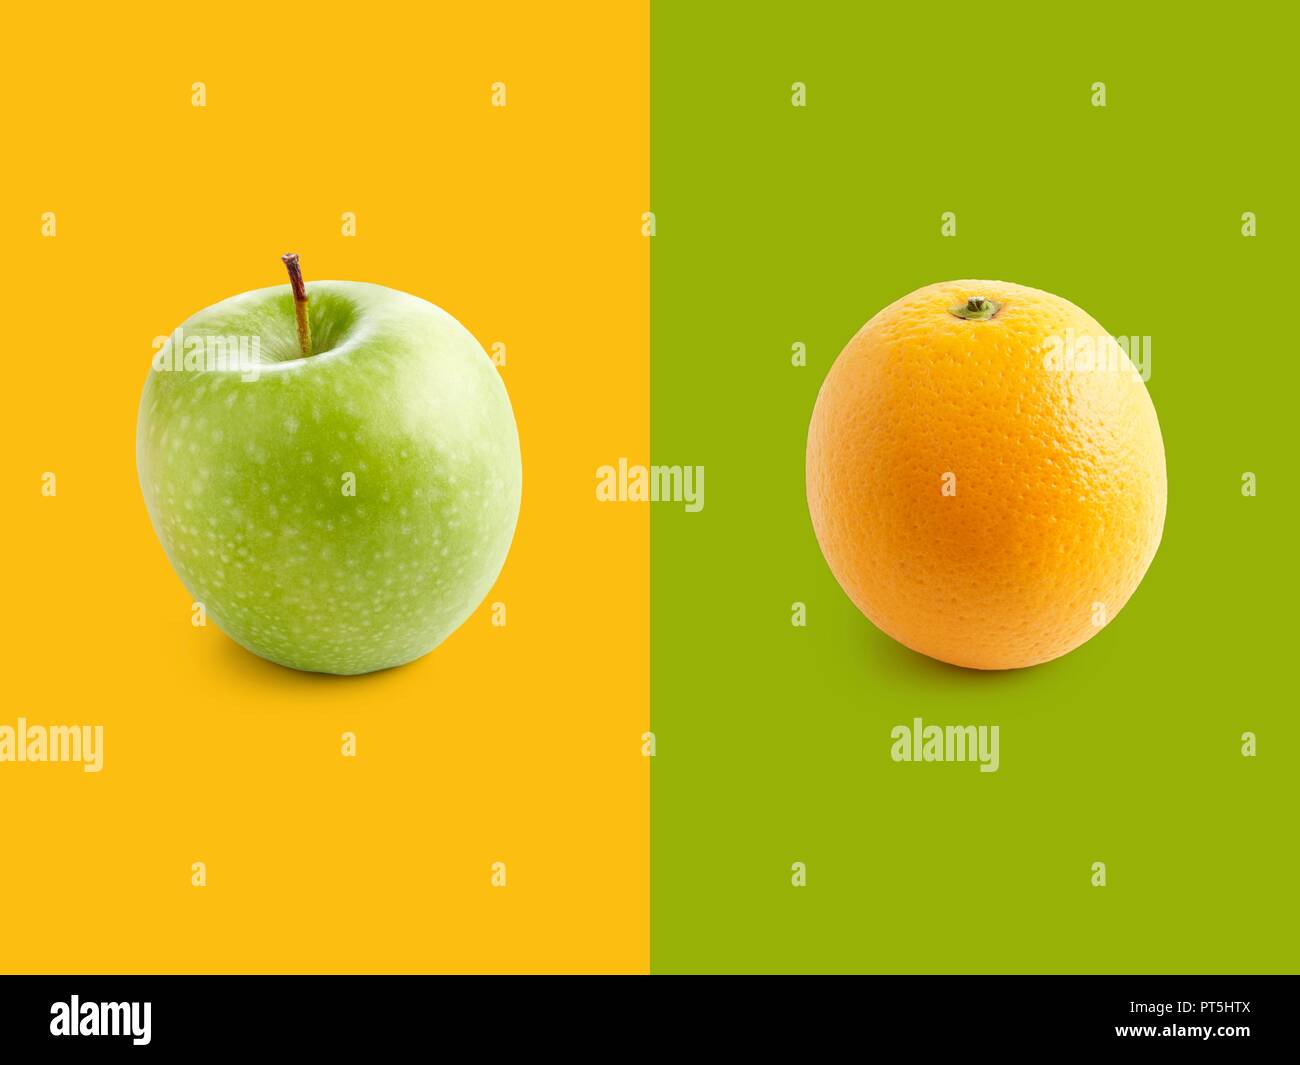 Apple e orange contro il verde e il giallo dello sfondo. Foto Stock